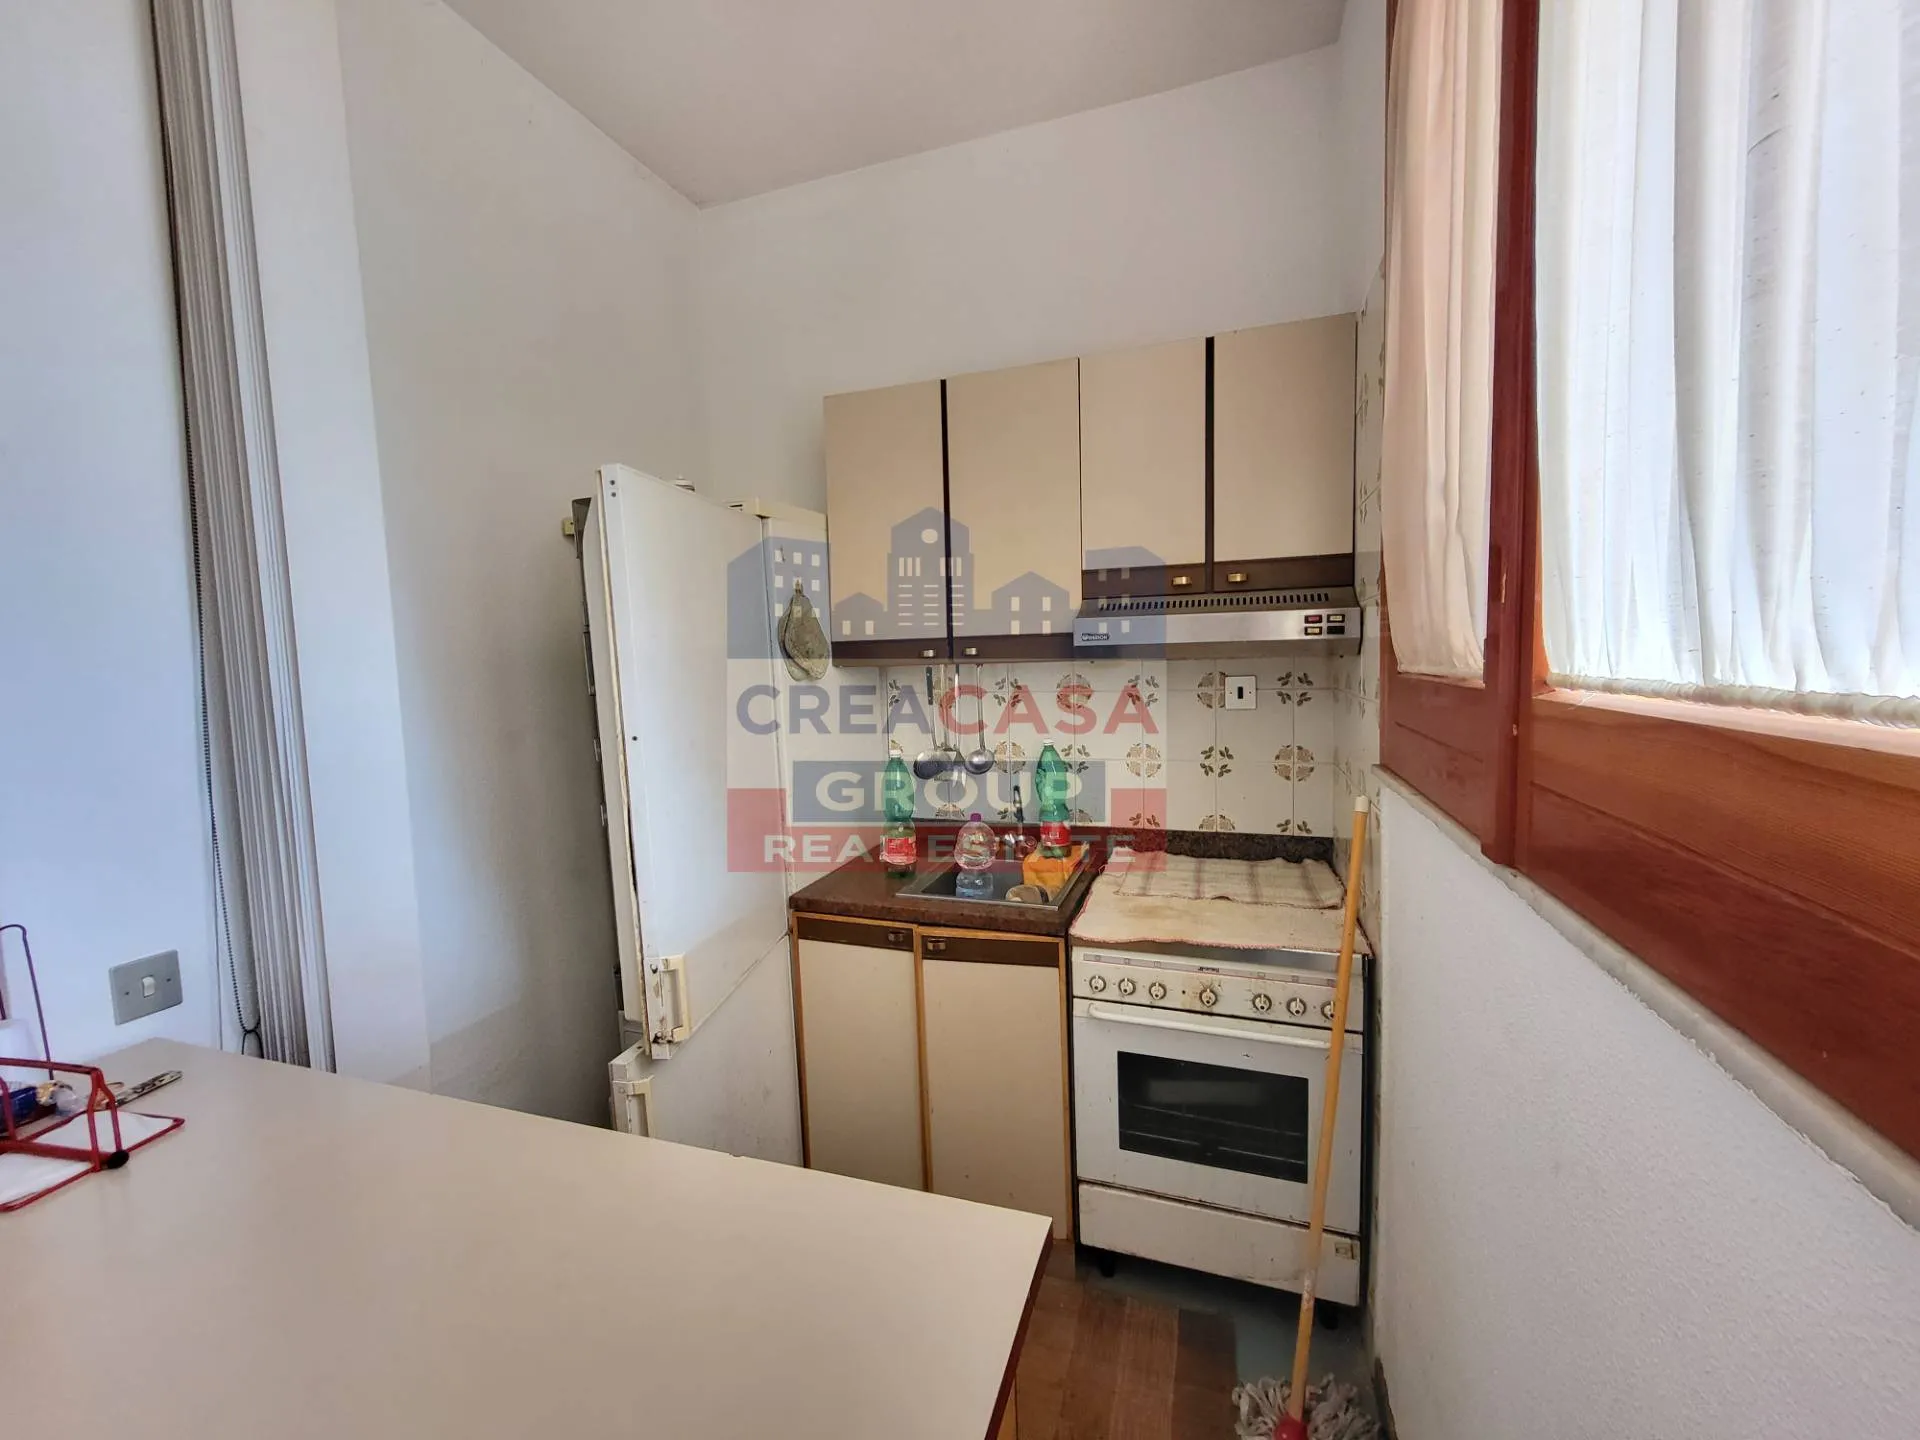 Immagine per Appartamento in vendita a Letojanni contrada sillemi